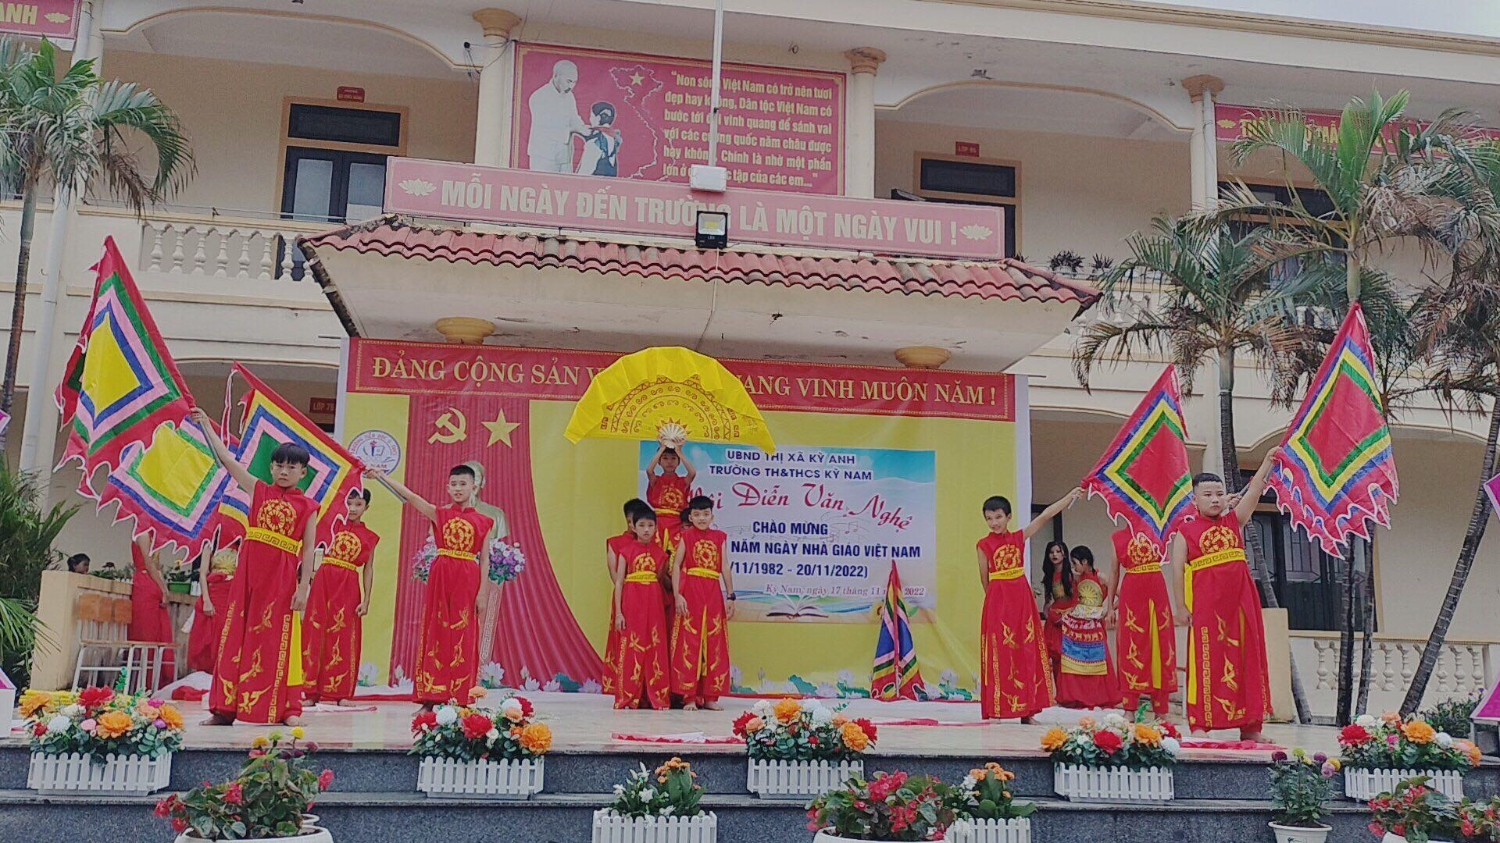 Trường TH&THCS Kỳ Nam tổ chức chuỗi hoạt động  kỉ niệm 40 năm ngày Nhà giáo Việt Nam (20/11/1982 - 20/11/2022)